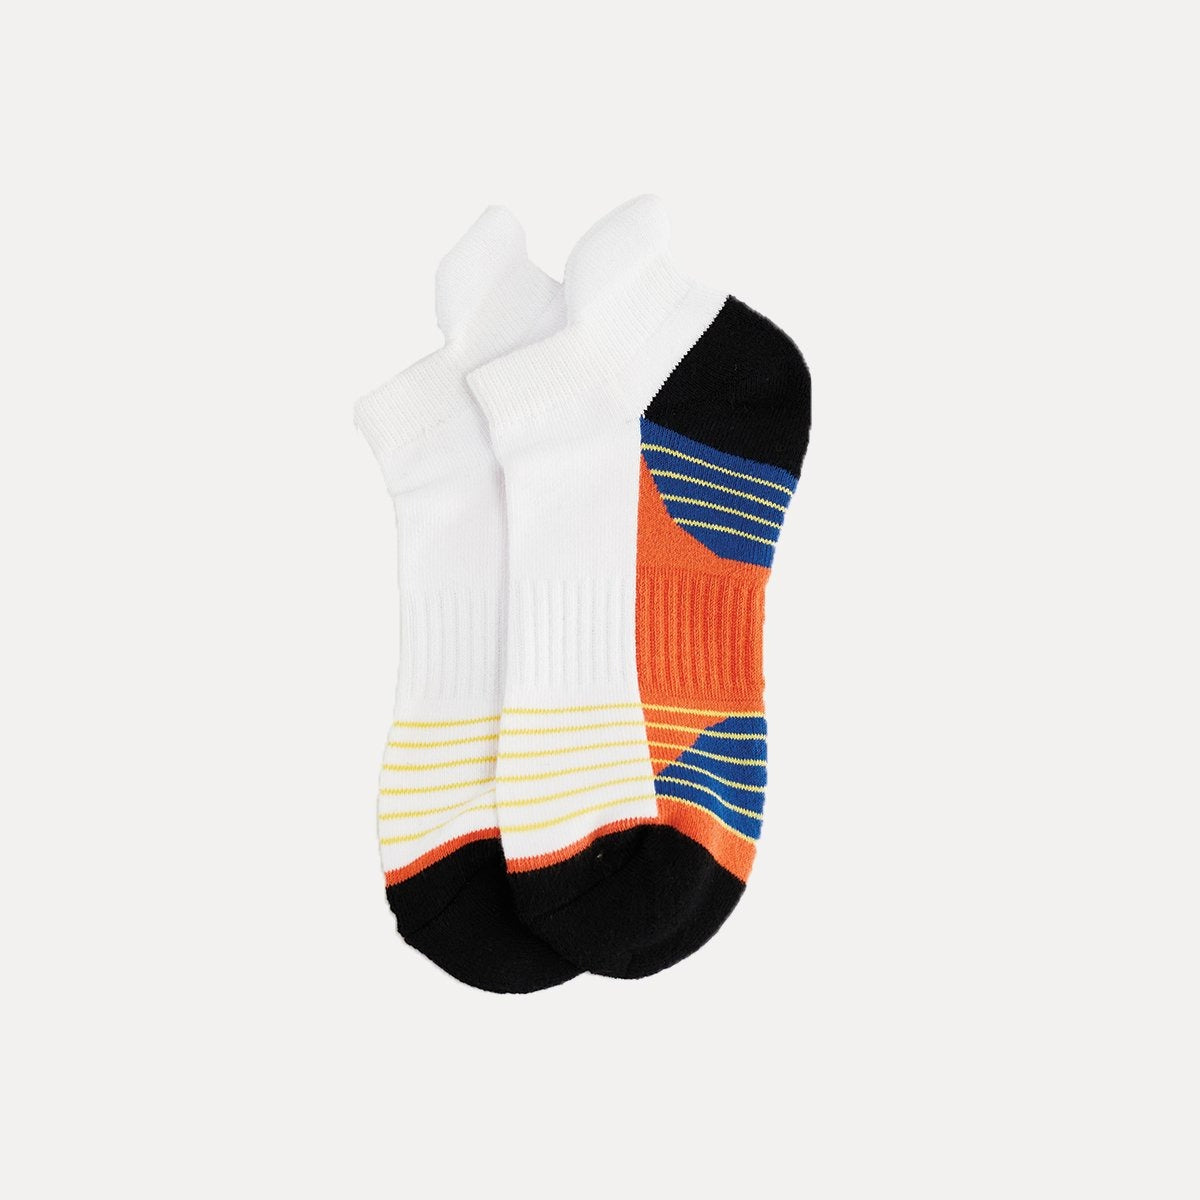 襪子 |及踝襪 - 白橙